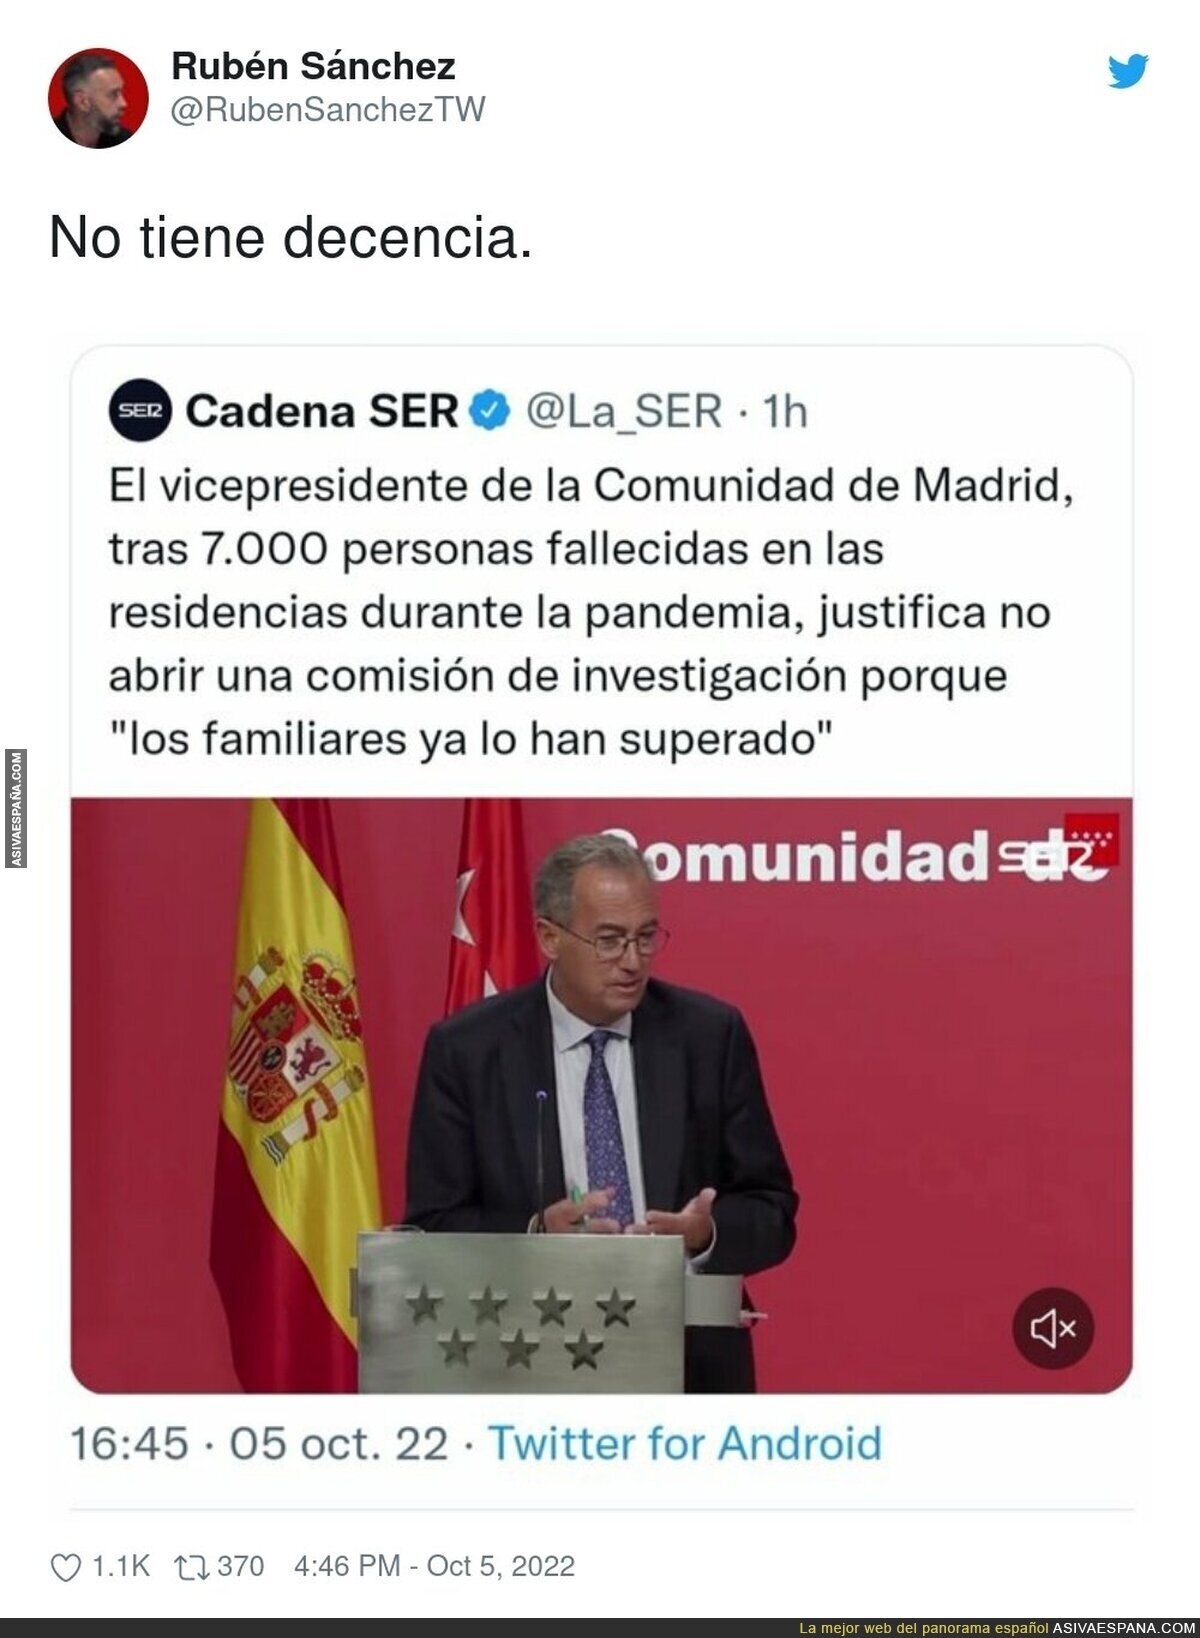 El vicepresidente de la Comunidad de Madrid es un impresentable